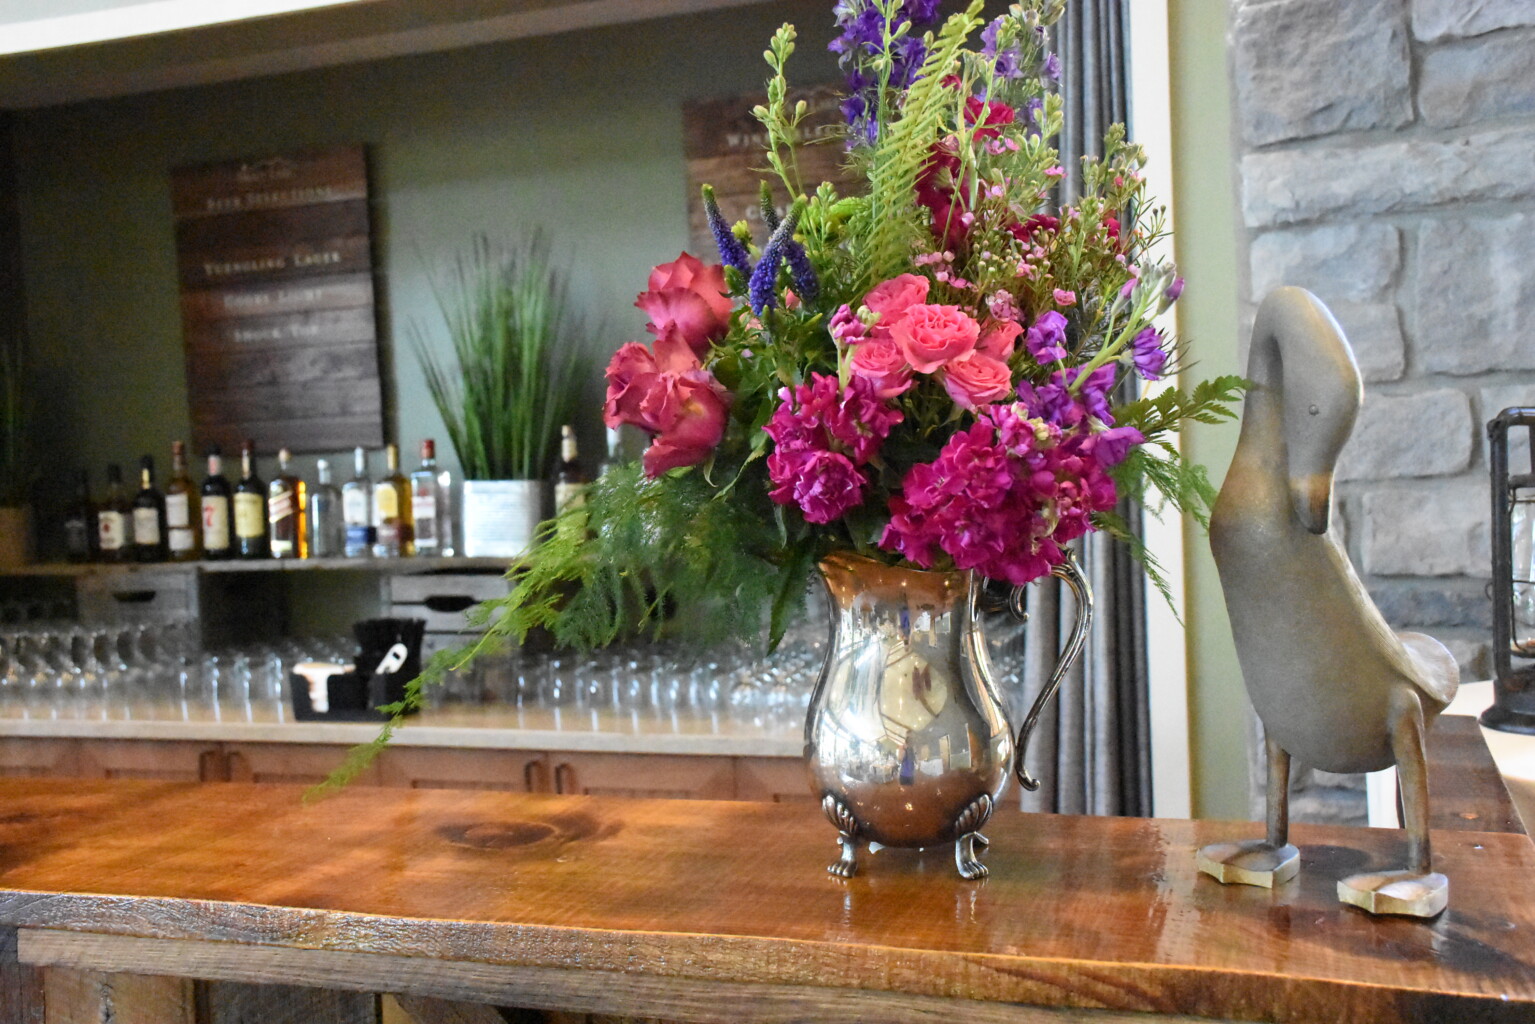 Flowers on bar.